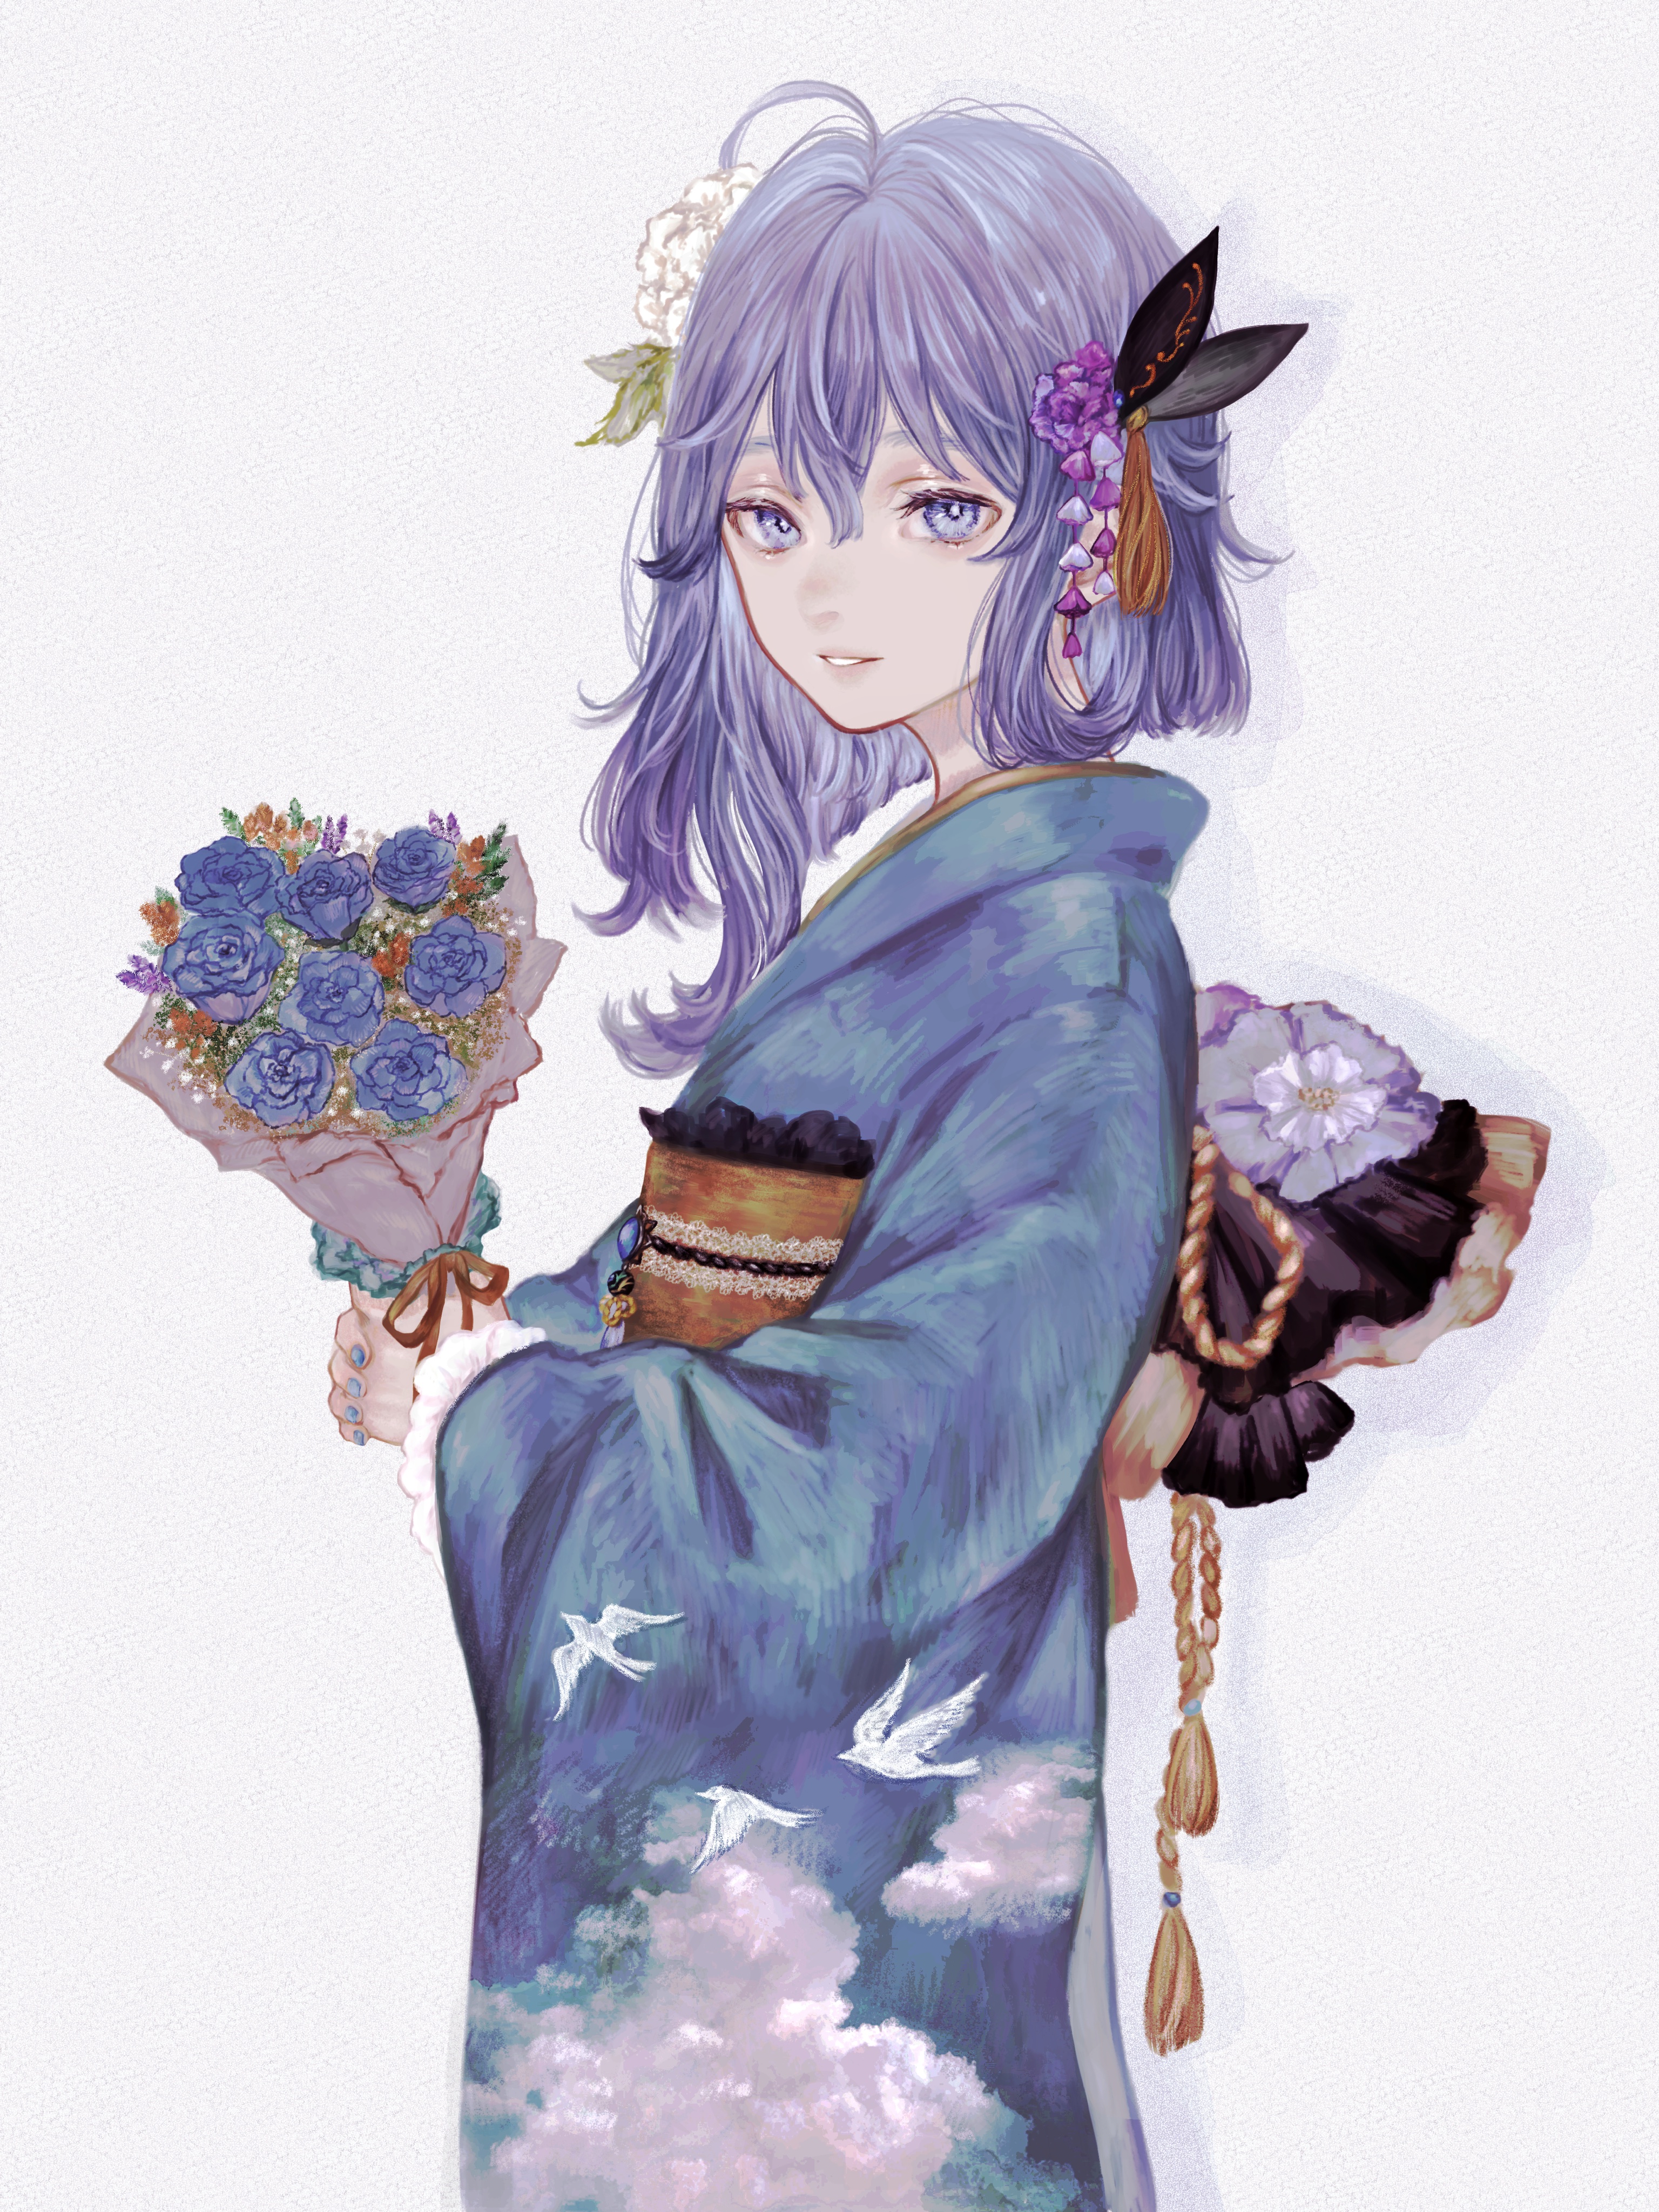 CiEL KAMiTSUBAKi Anime Girls Flowers Kimono White Background Blue Eyes 3072x4096